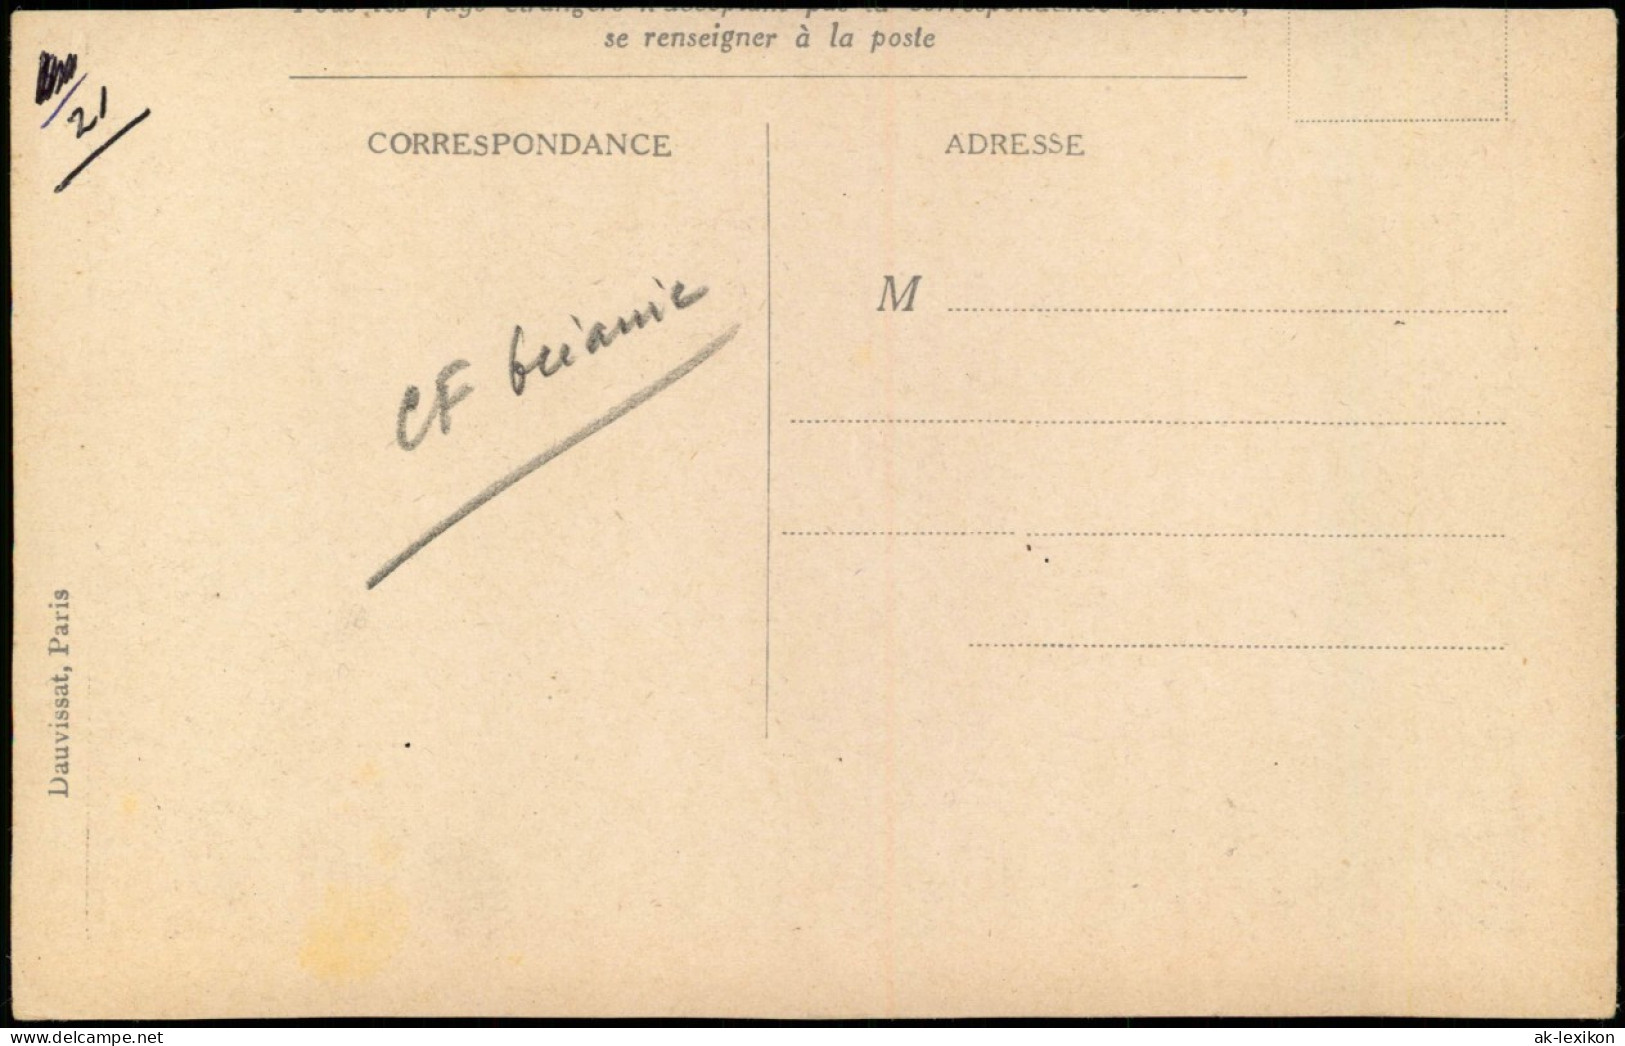 Französisch Polynesien PAYSAGE DE RAIATEA (lles De La Société).   1912 - French Polynesia